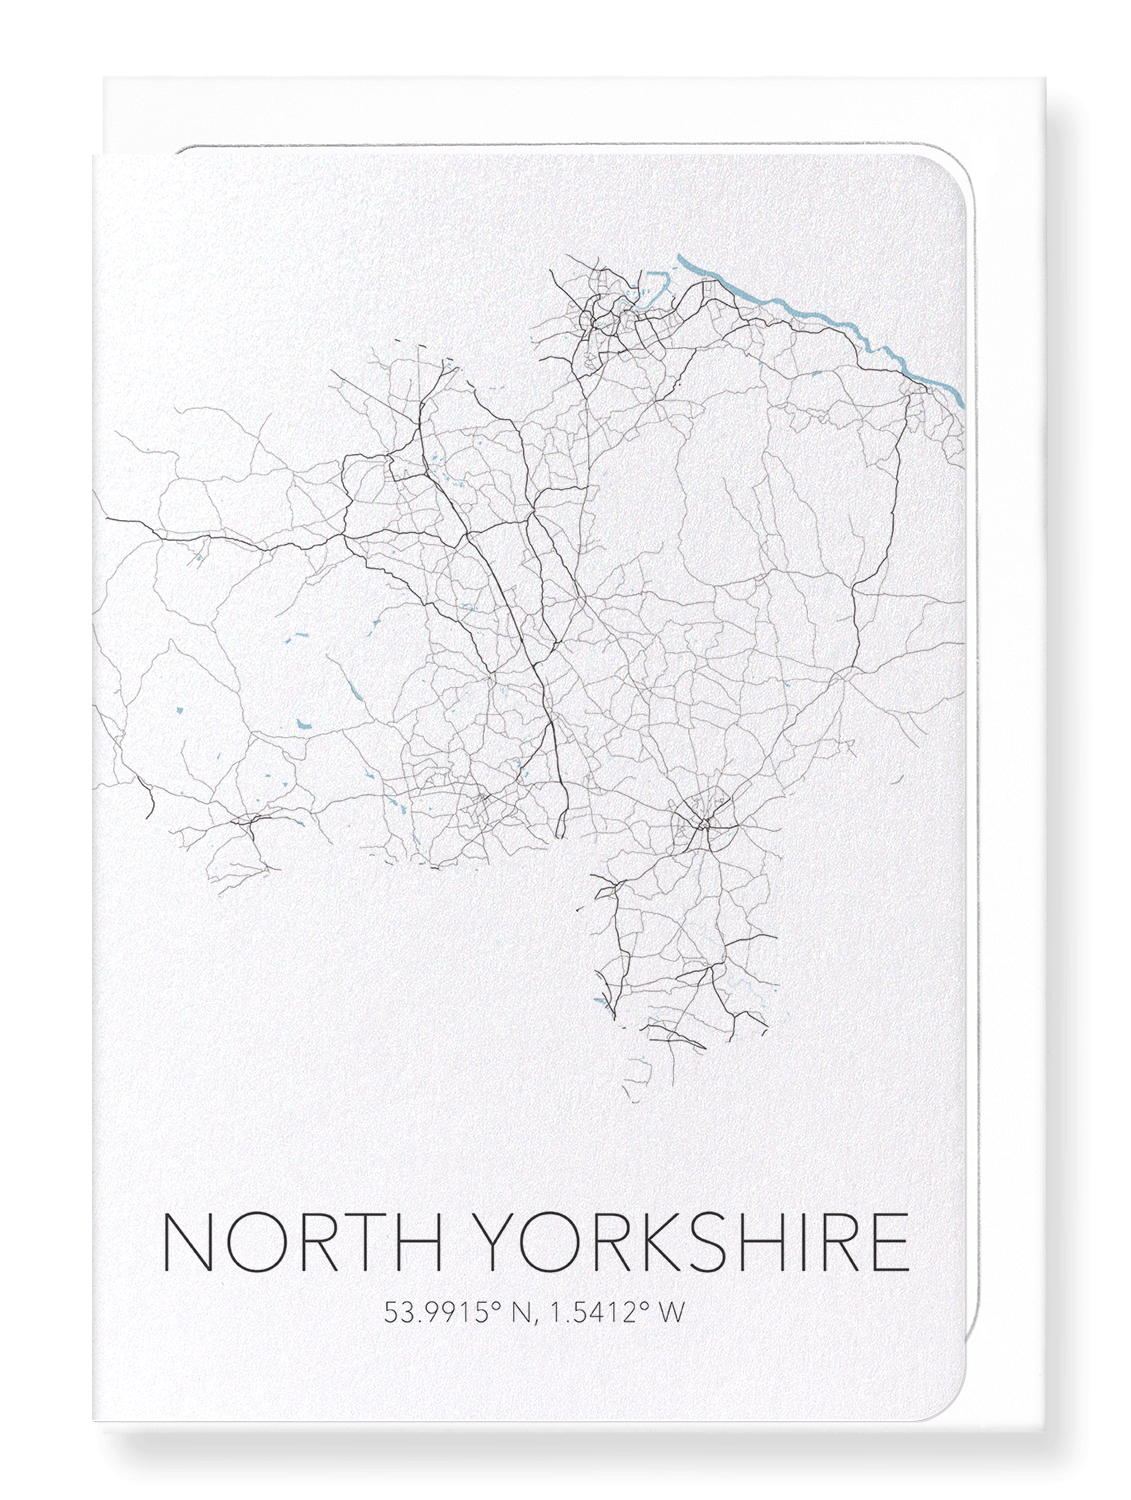 NORTH YORKSHIRE CUTOUT: Map Cutout Greeting Card